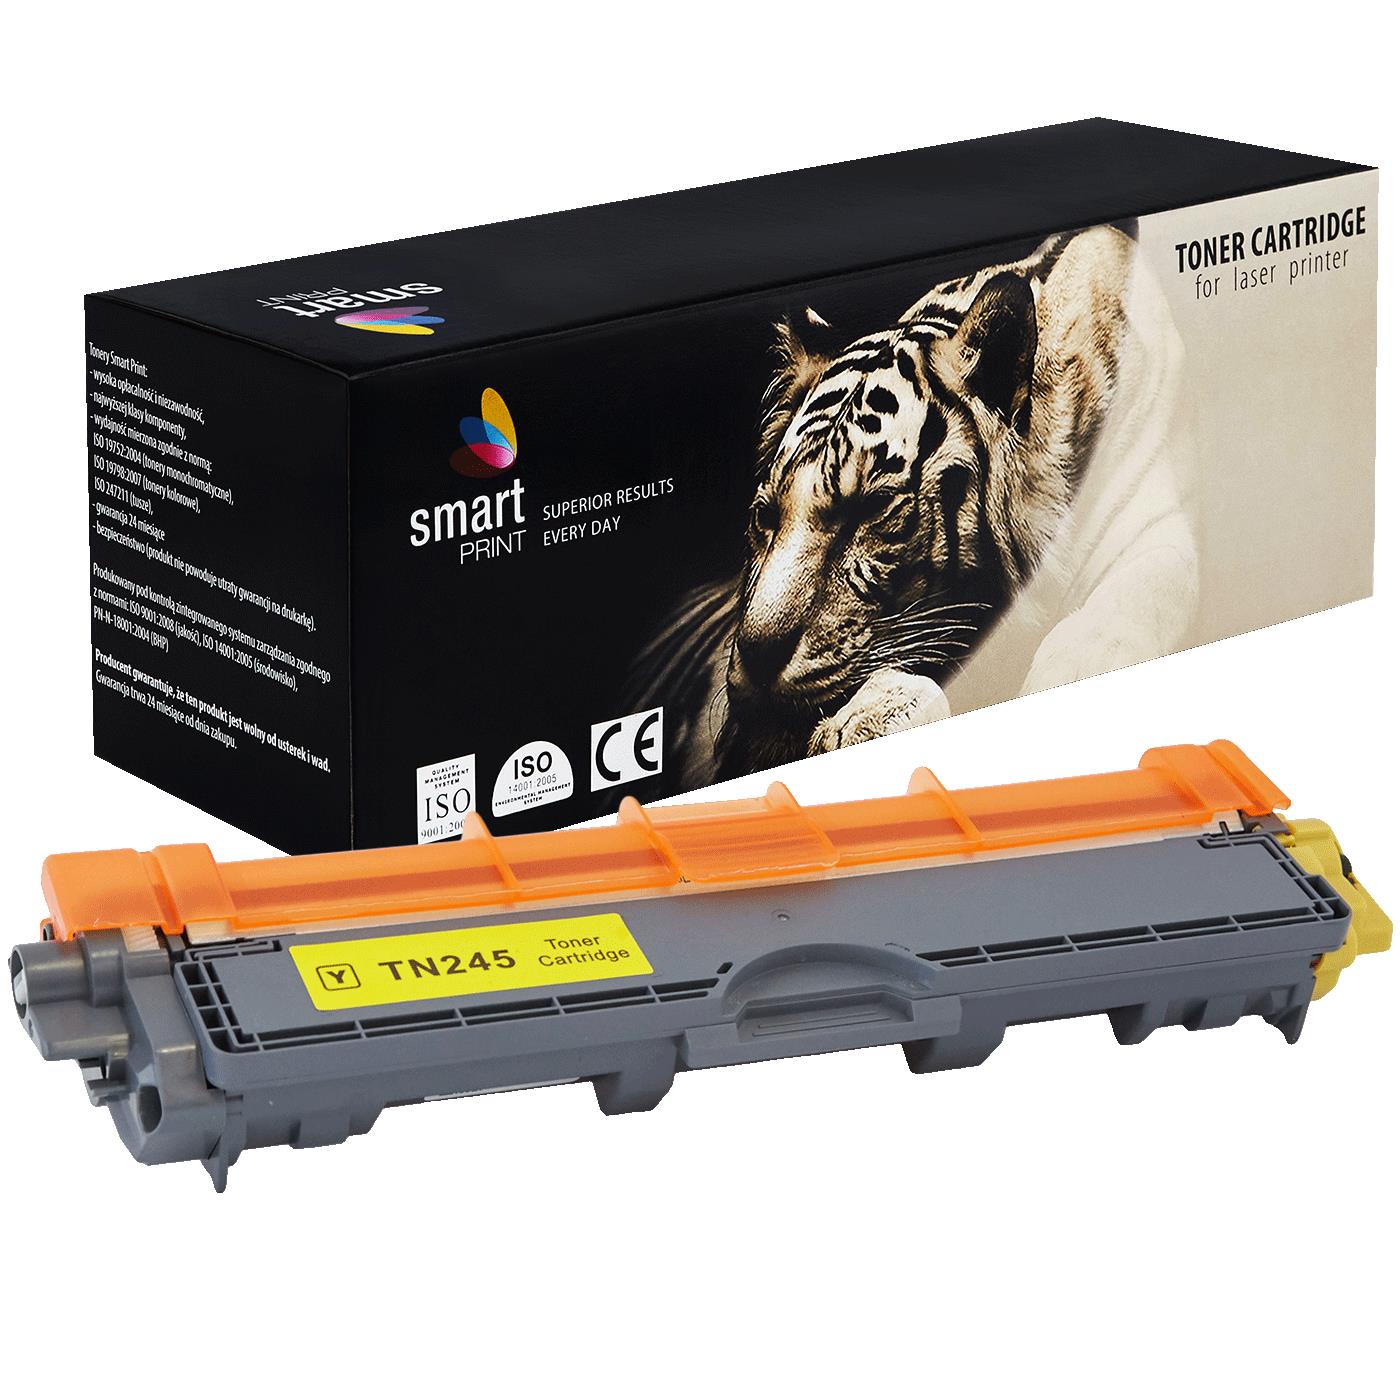 съвместима тонер касета за принтери и печатащи устройства на Brother MFC-9140 CDN Toner BR-245Y | TN245Y / TN241Y. Ниски цени, прецизно изпълнение, високо качество.